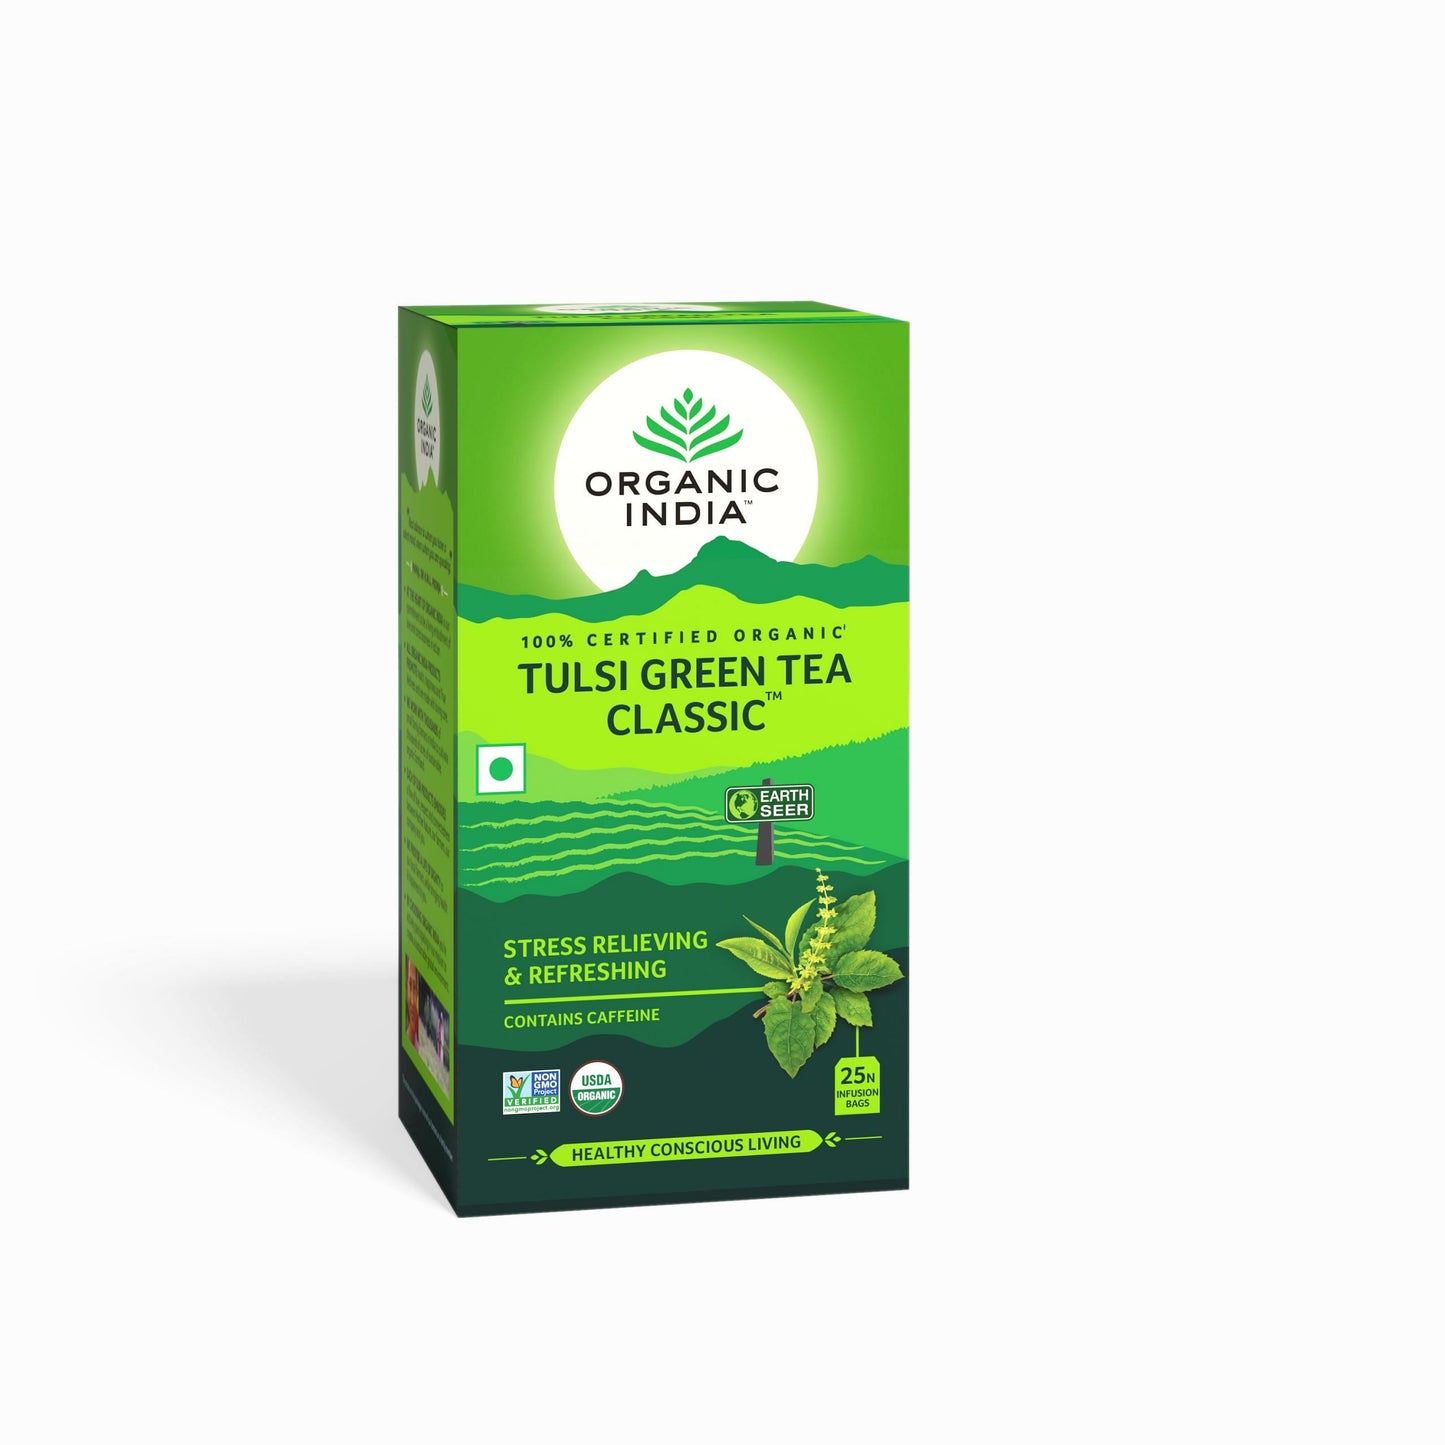 Organic India Tulsi Green Tea Classic 25 Infusion Bags